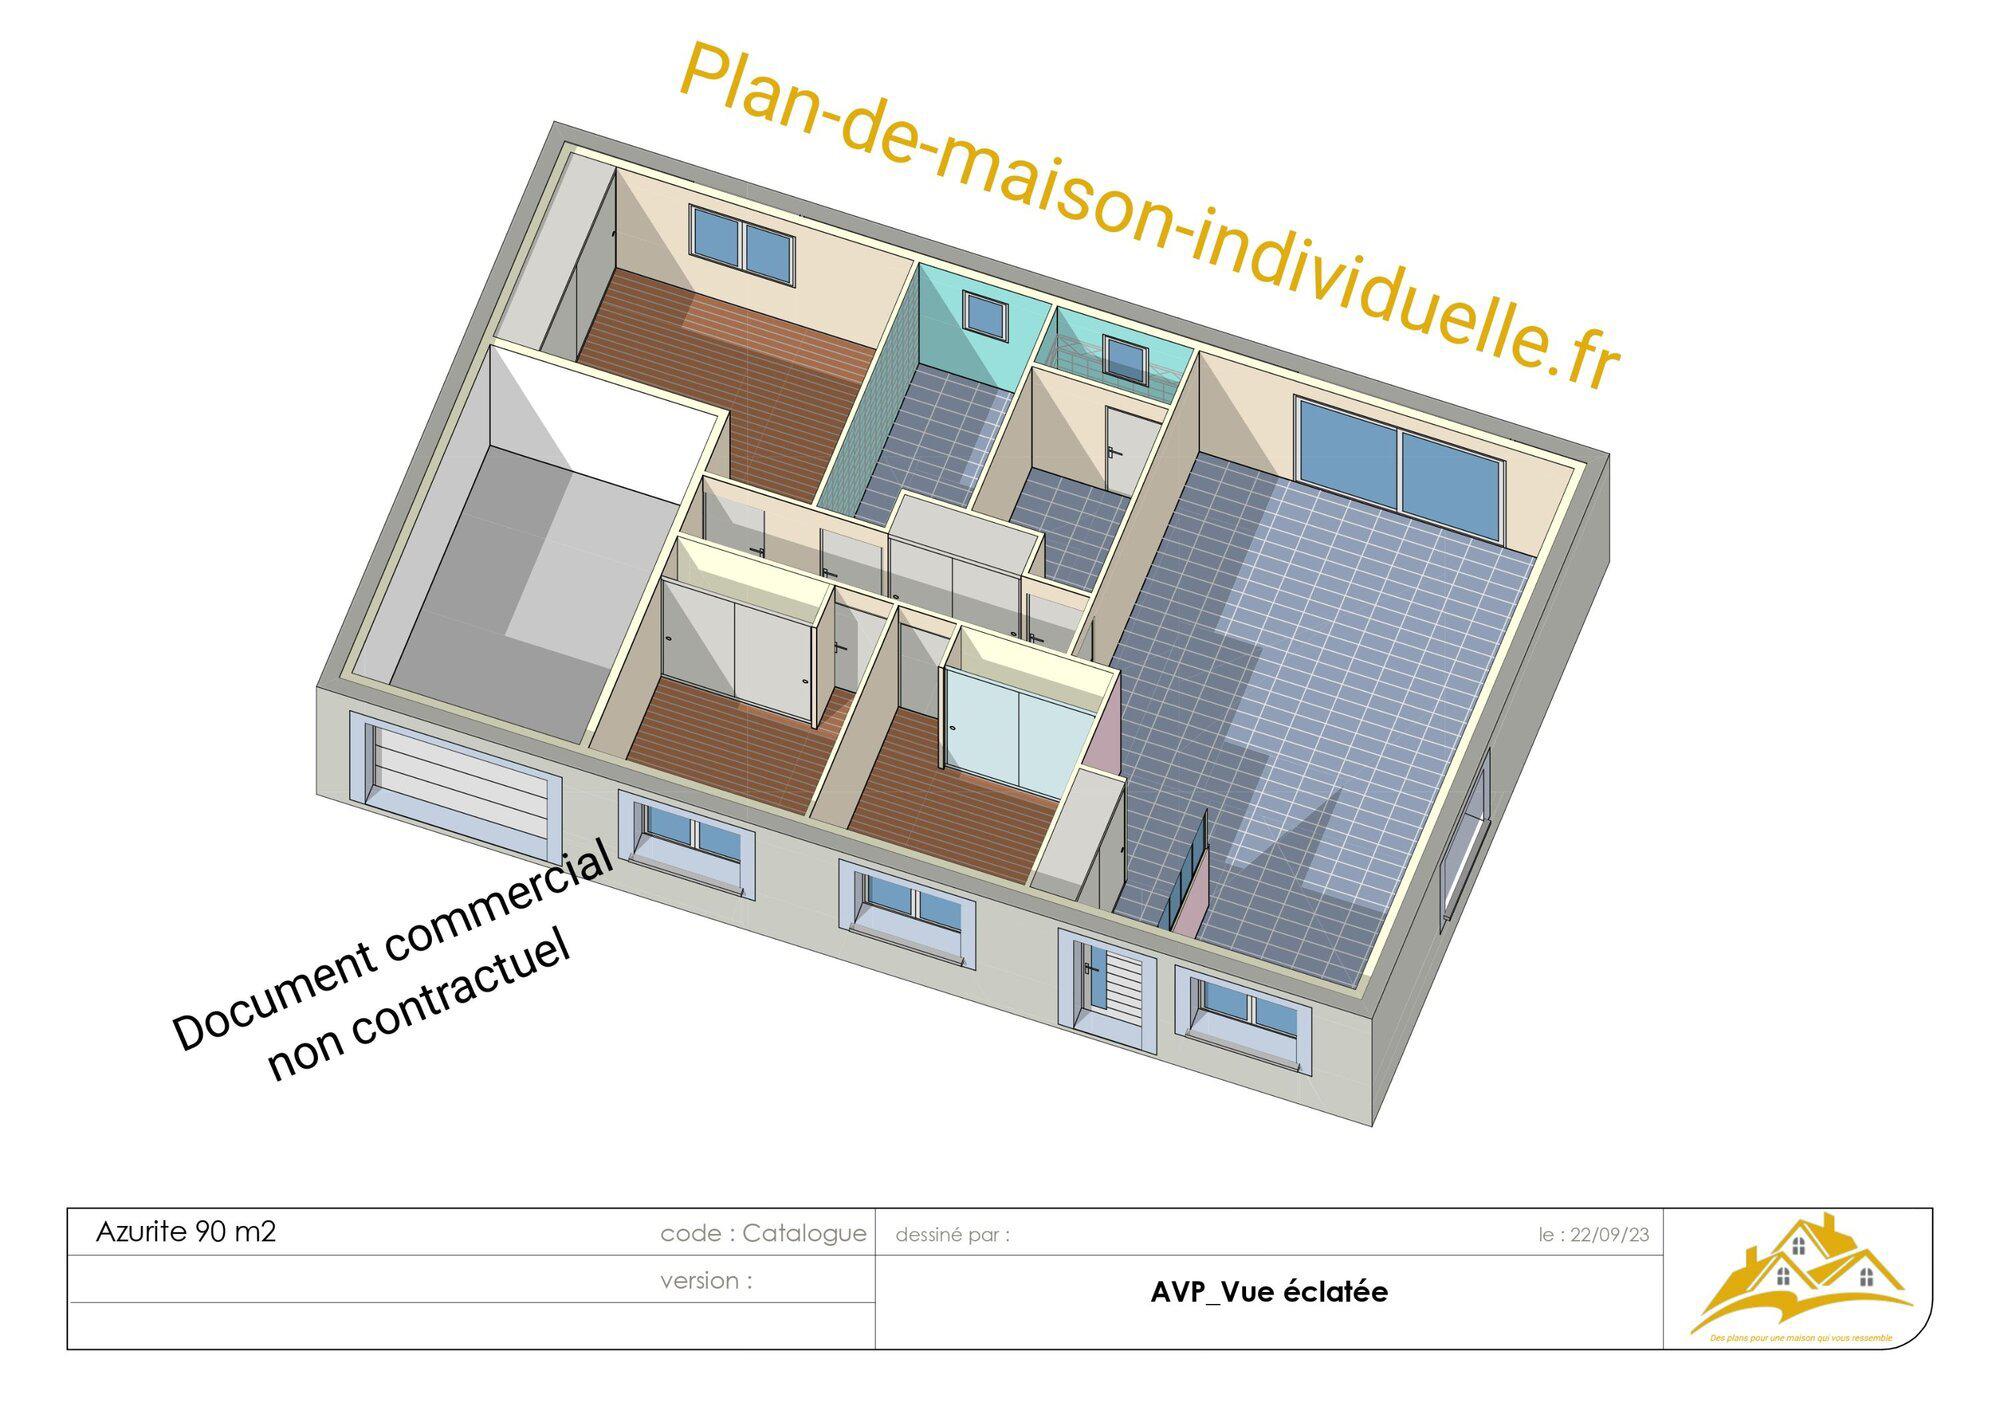 Images plan-de-maison-individuelle.fr